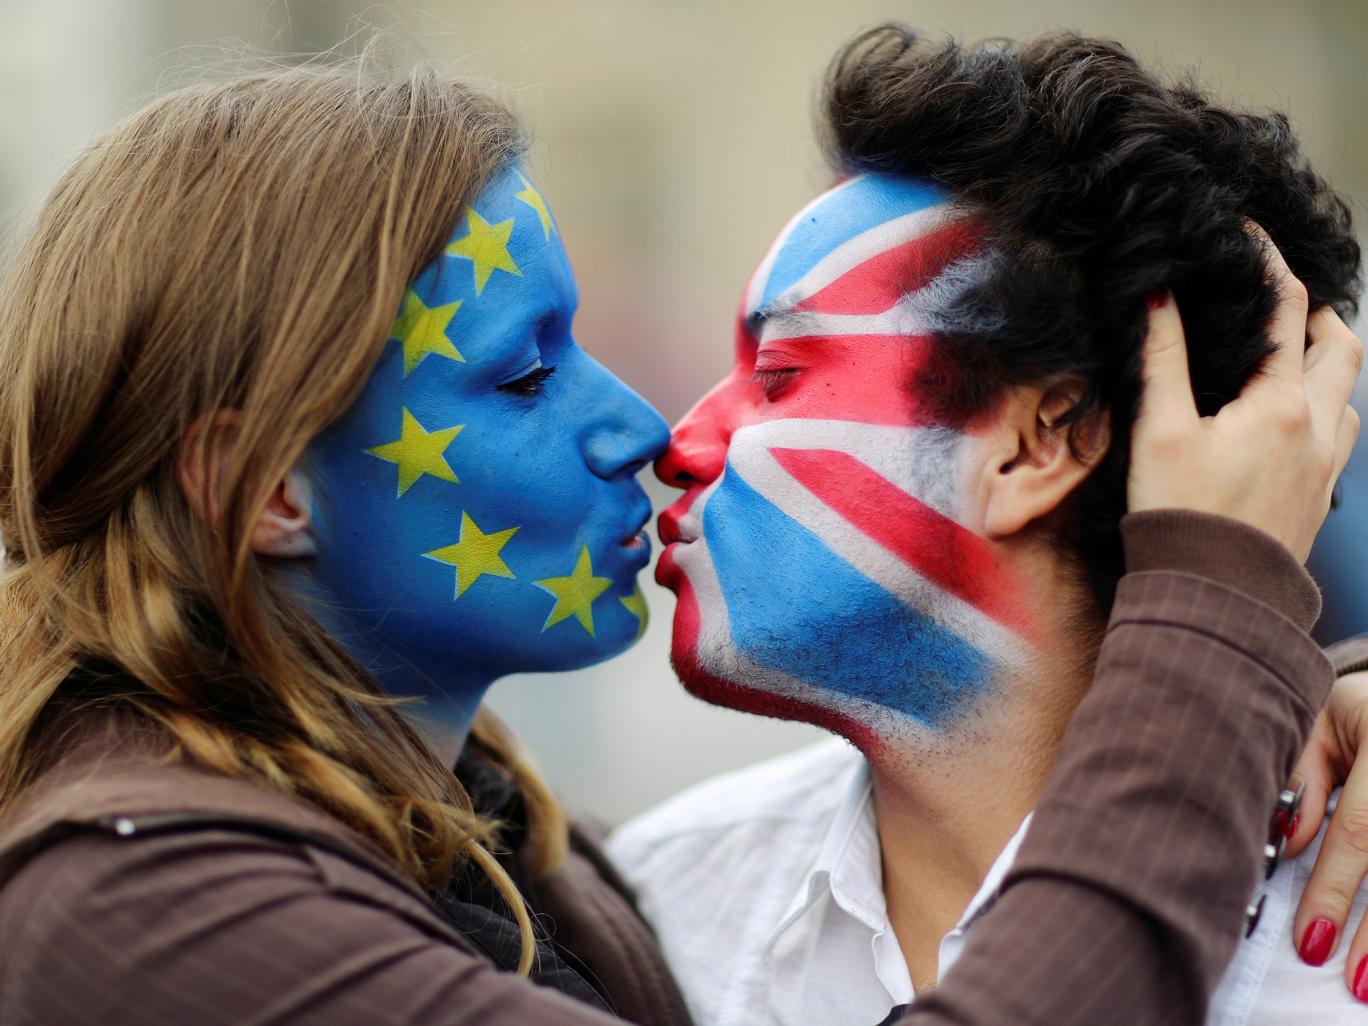 Bekeményít az EU: nem tárgyalnak a britekkel, amíg nincs elintézve a tartózkodási engedély kédése 2